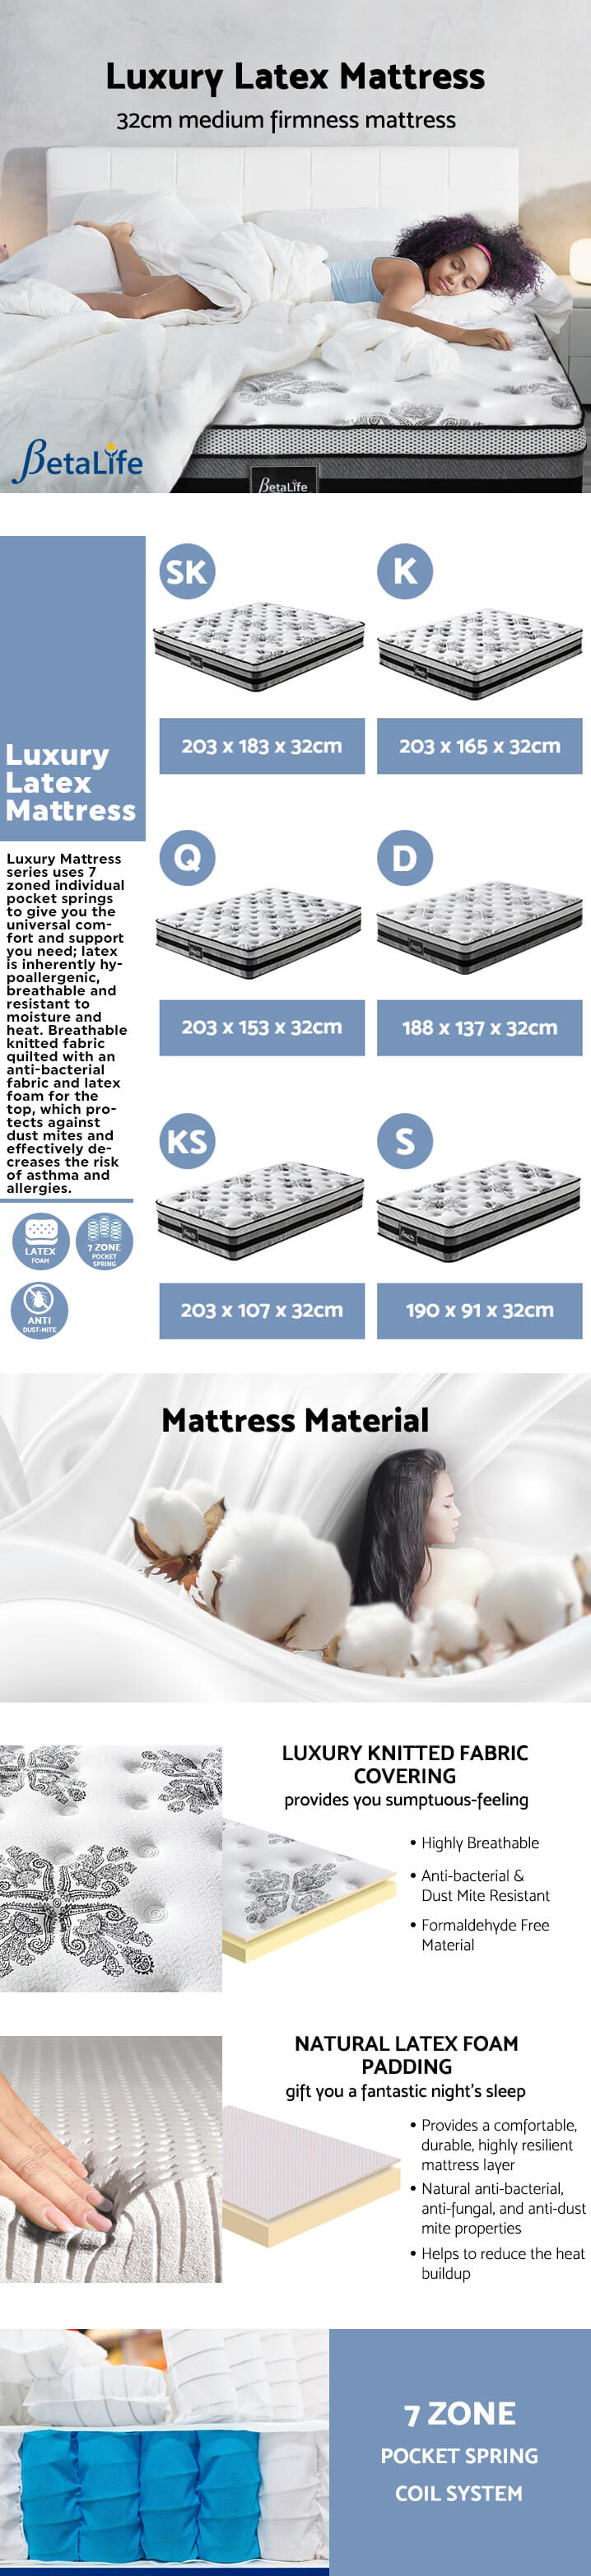 Betalife Luxury Latex Mattress